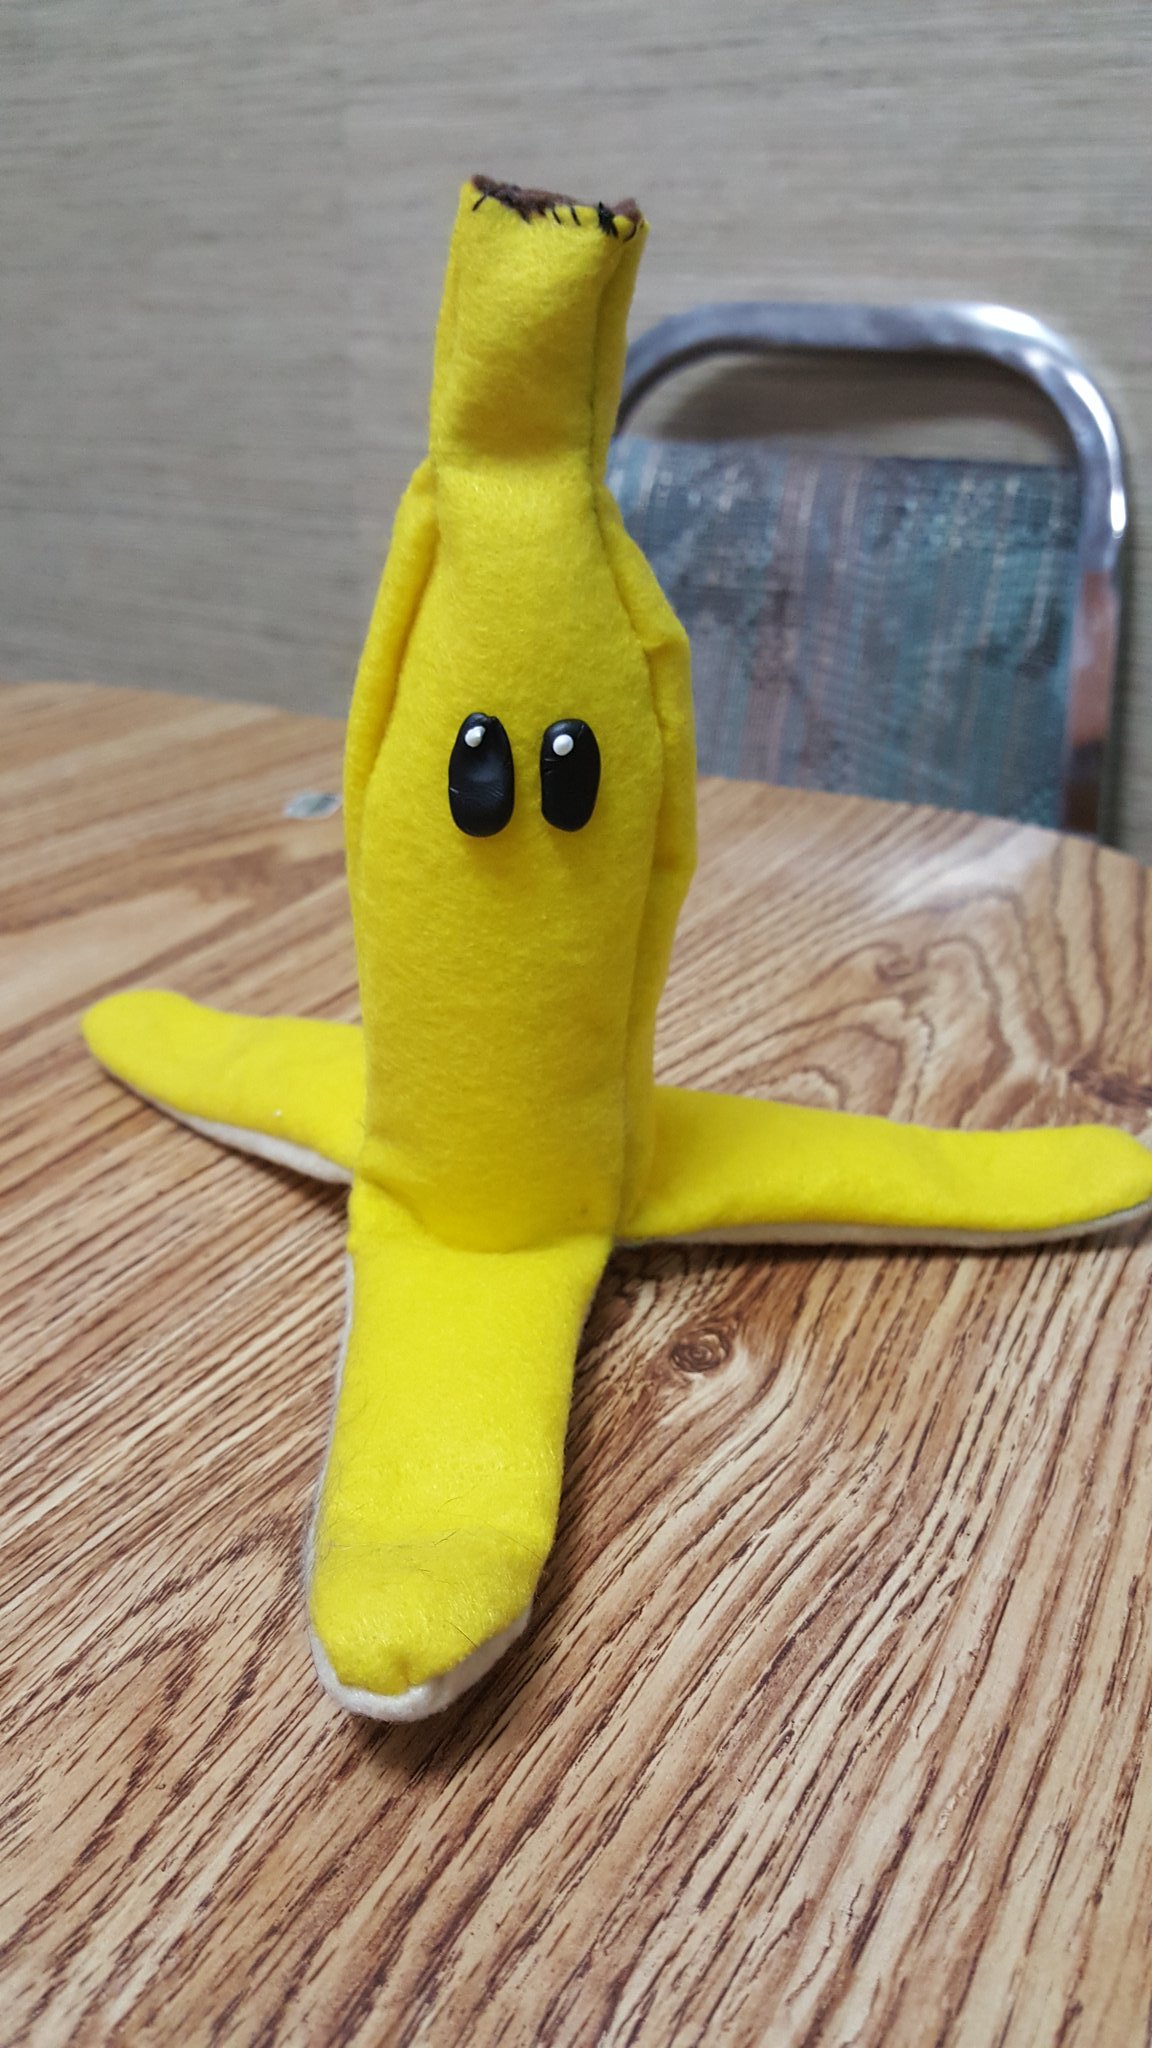 Banana Peel, Nintendo